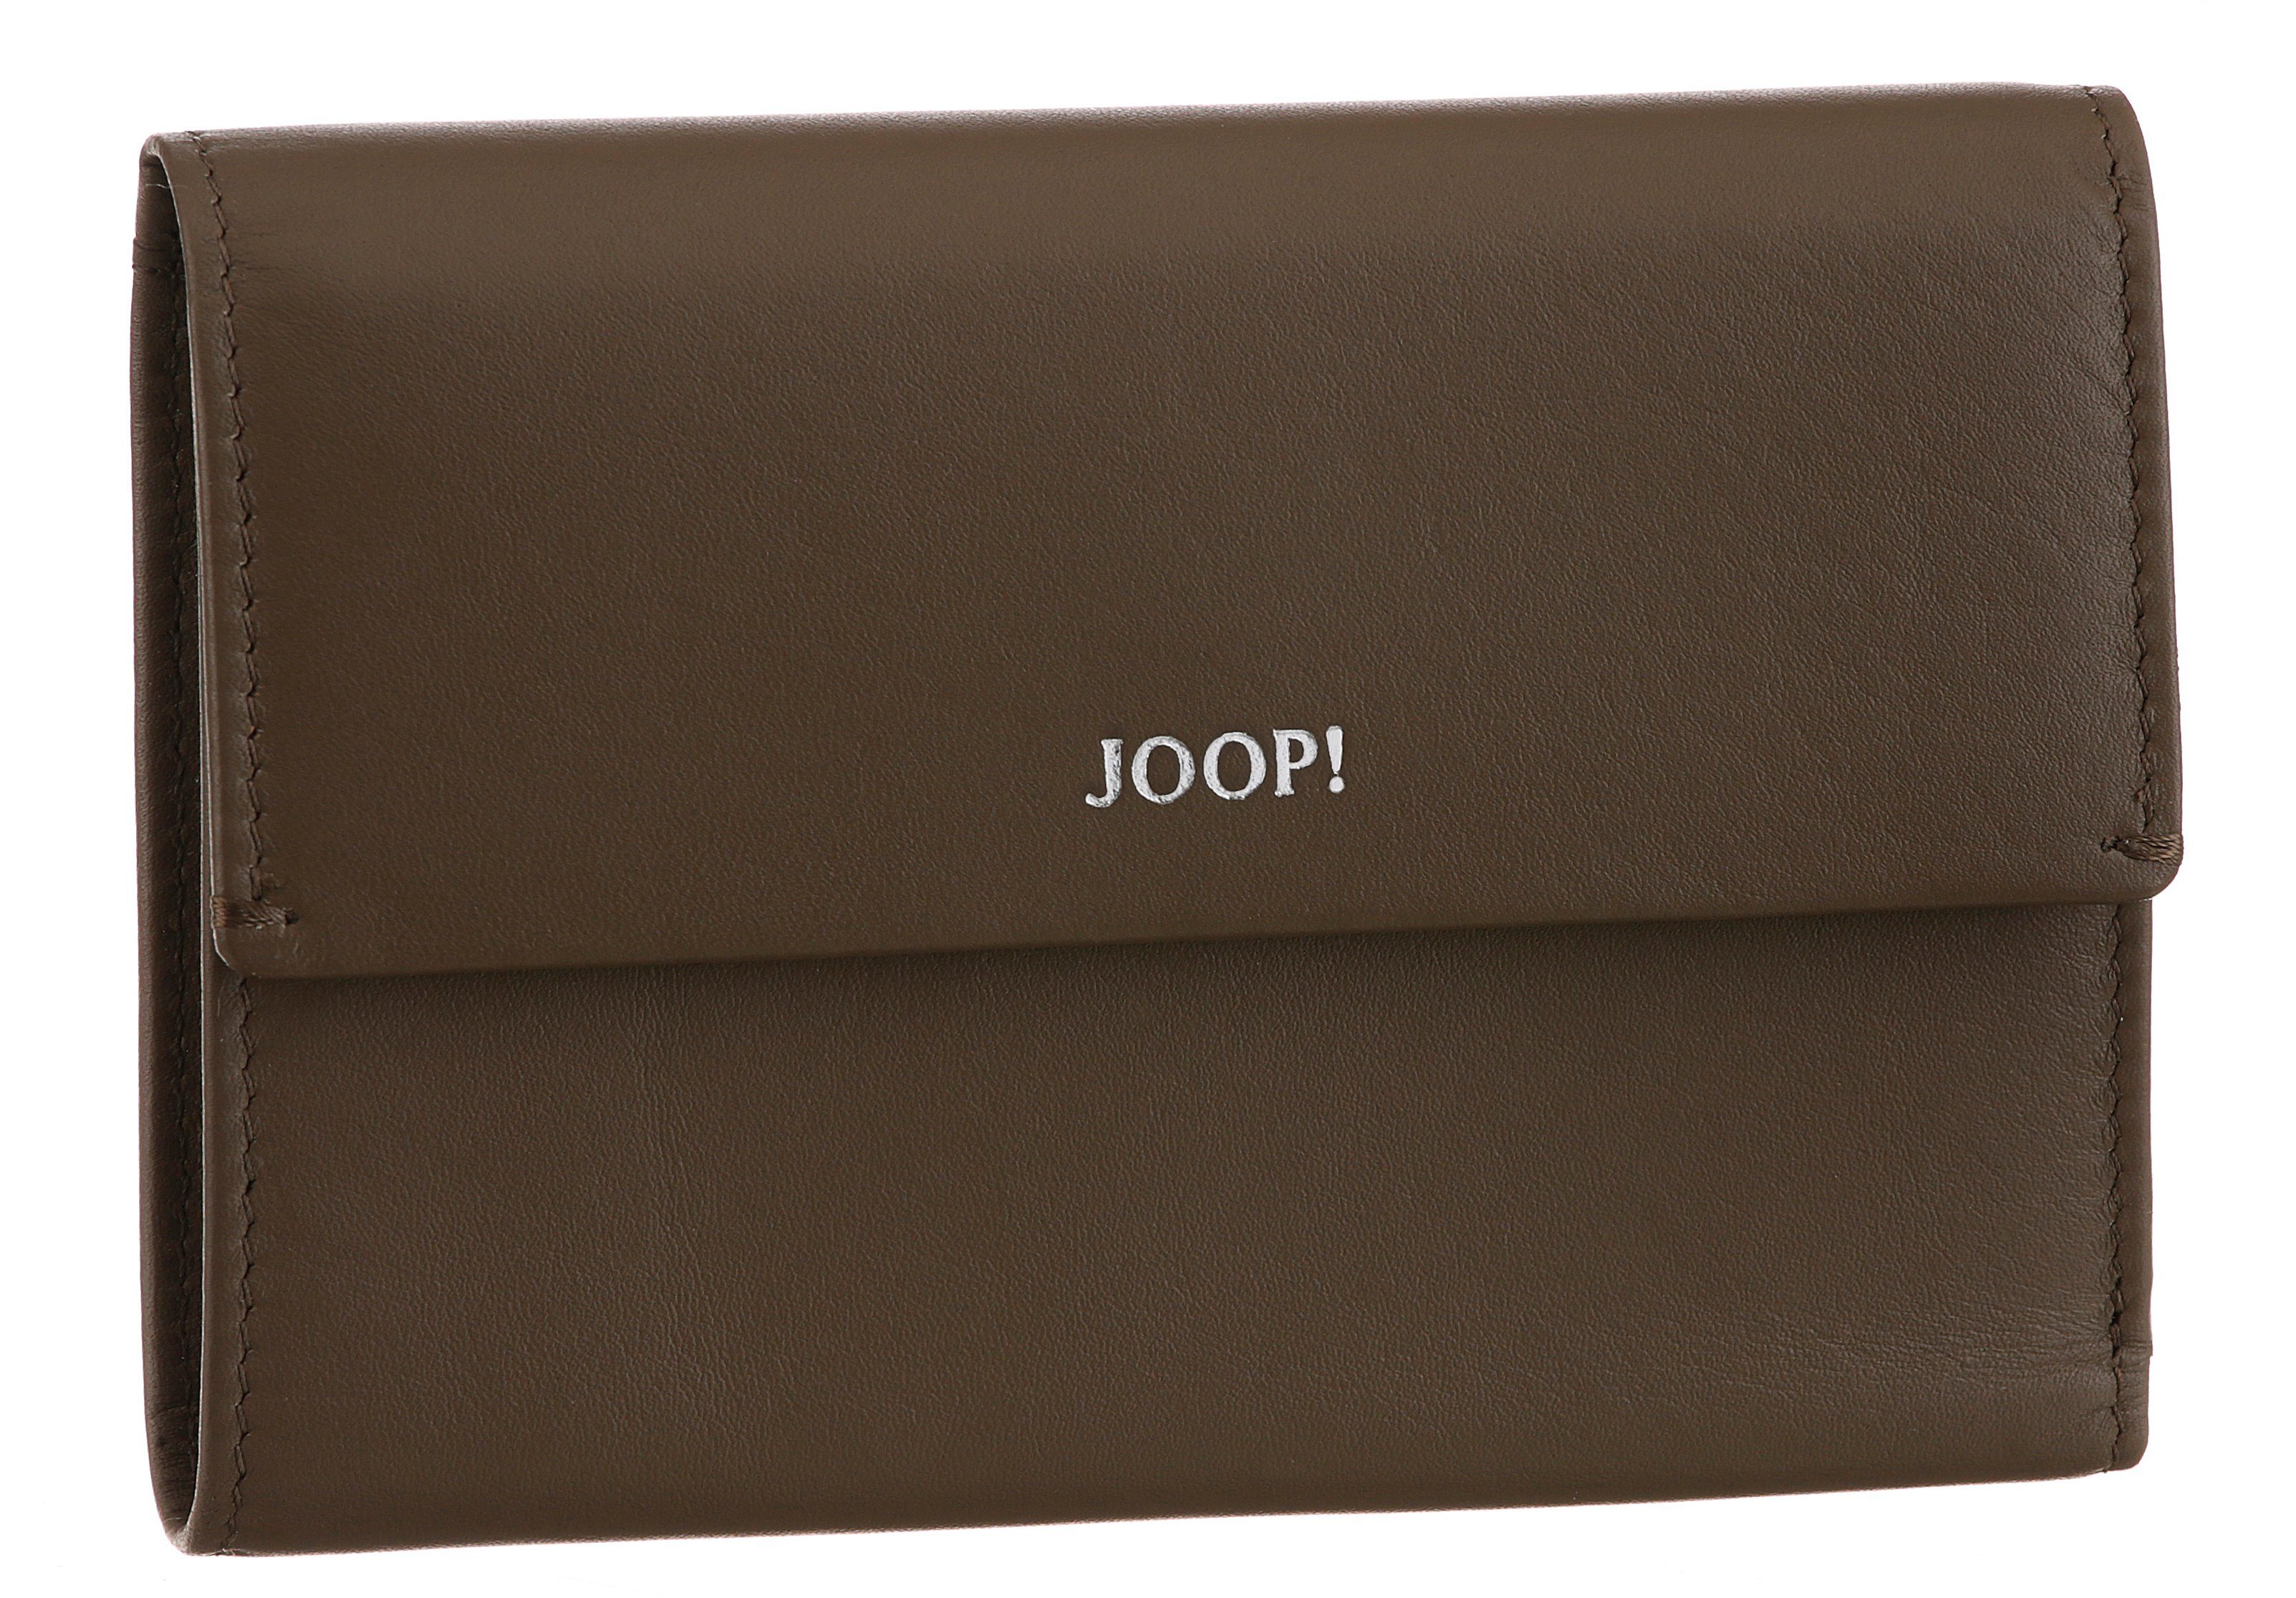 schlichtem Design purse Joop! 1.0 in dunkelbraun mh10f, cosma sofisticato Geldbörse